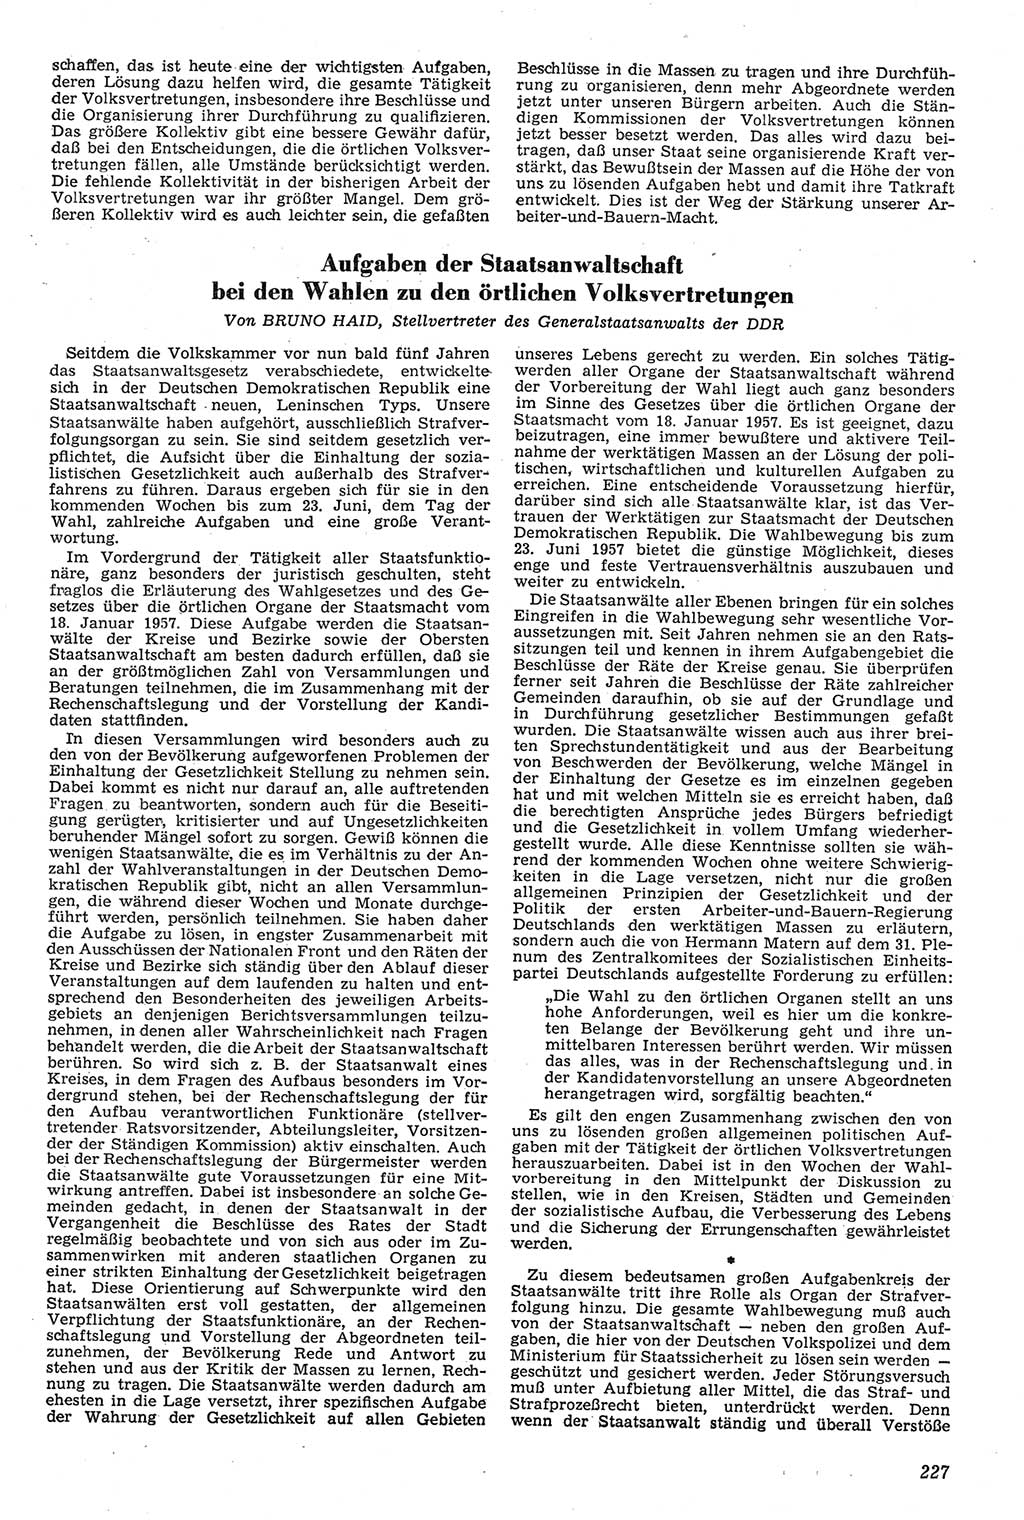 Neue Justiz (NJ), Zeitschrift für Recht und Rechtswissenschaft [Deutsche Demokratische Republik (DDR)], 11. Jahrgang 1957, Seite 227 (NJ DDR 1957, S. 227)